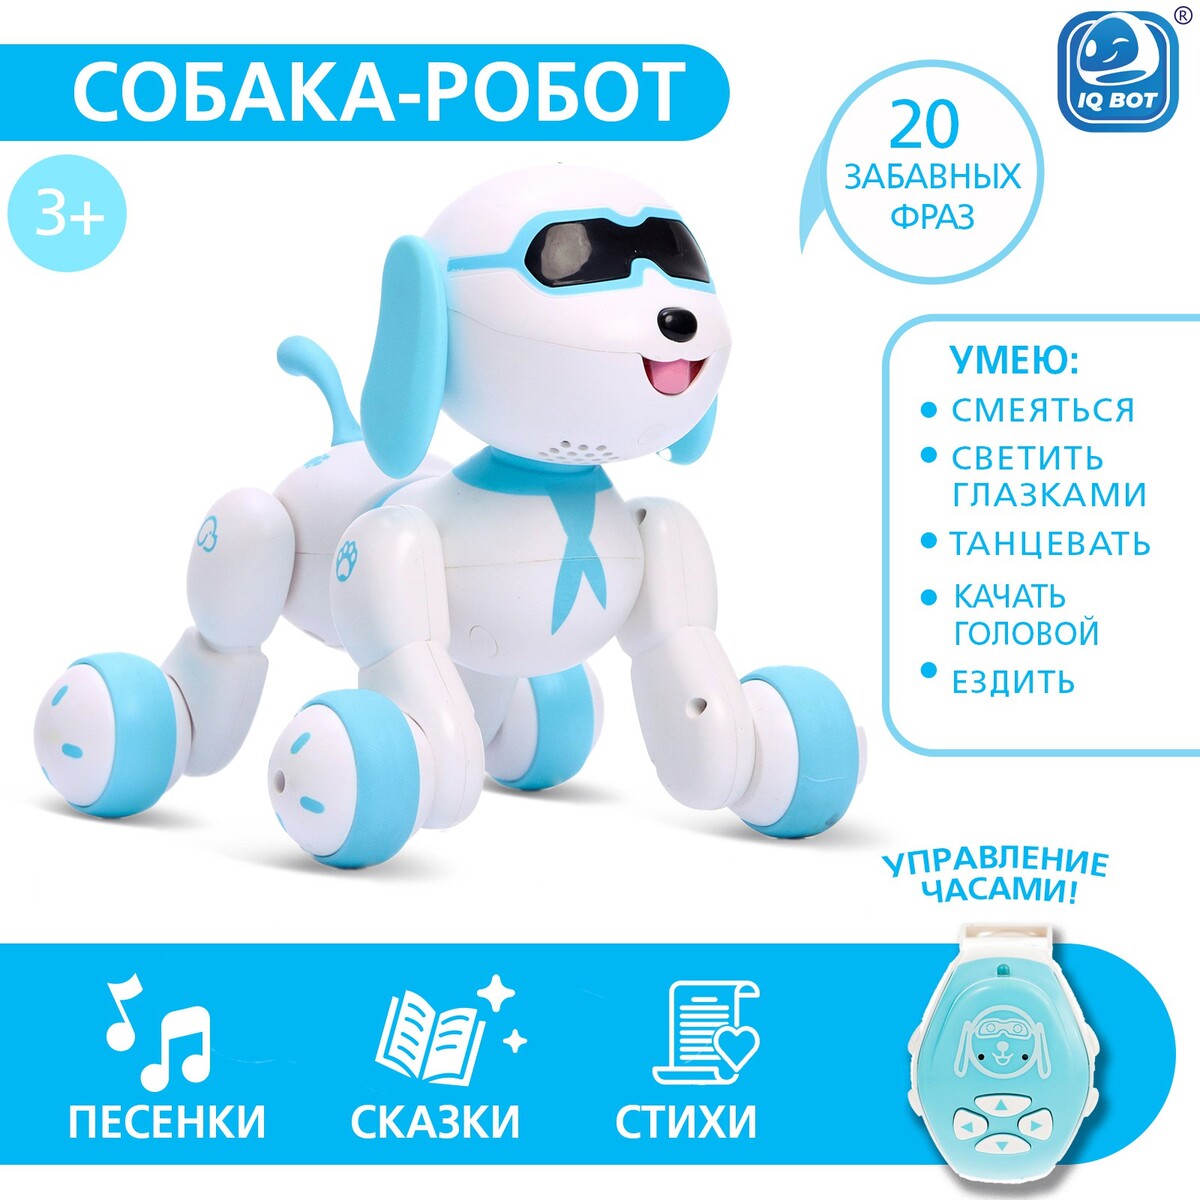 Робот собака charlie iq bot, на пульте управления, интерактивный: звук, свет, танцующий, музыкальный, на батарейках, на русском языке, бело-голубой feng yuan робот трансформер грузовик на пульте управления